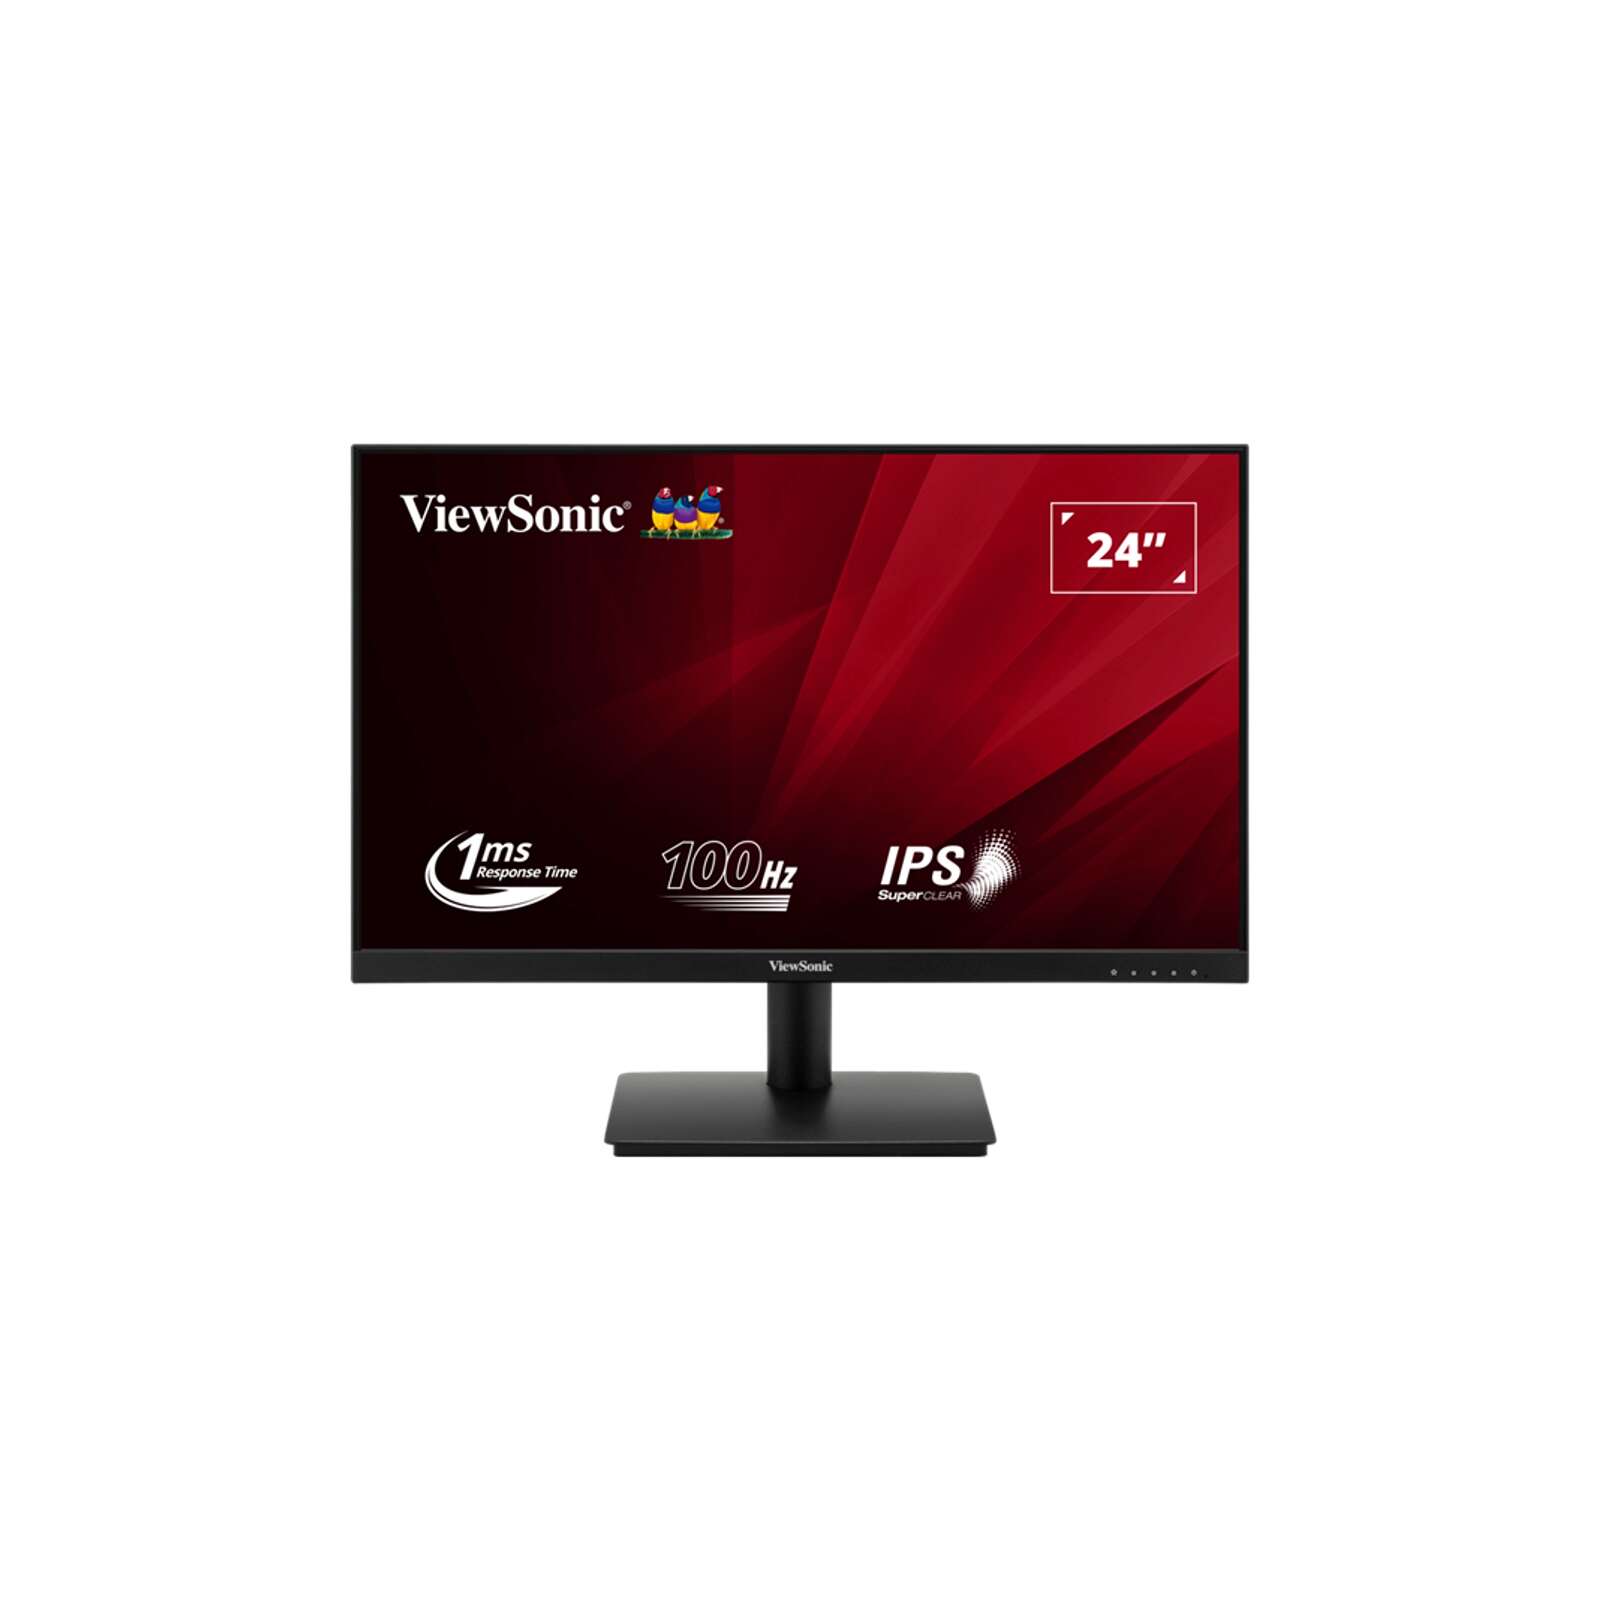 Viewsonic 23,8" va240-h monitor (va240-h)